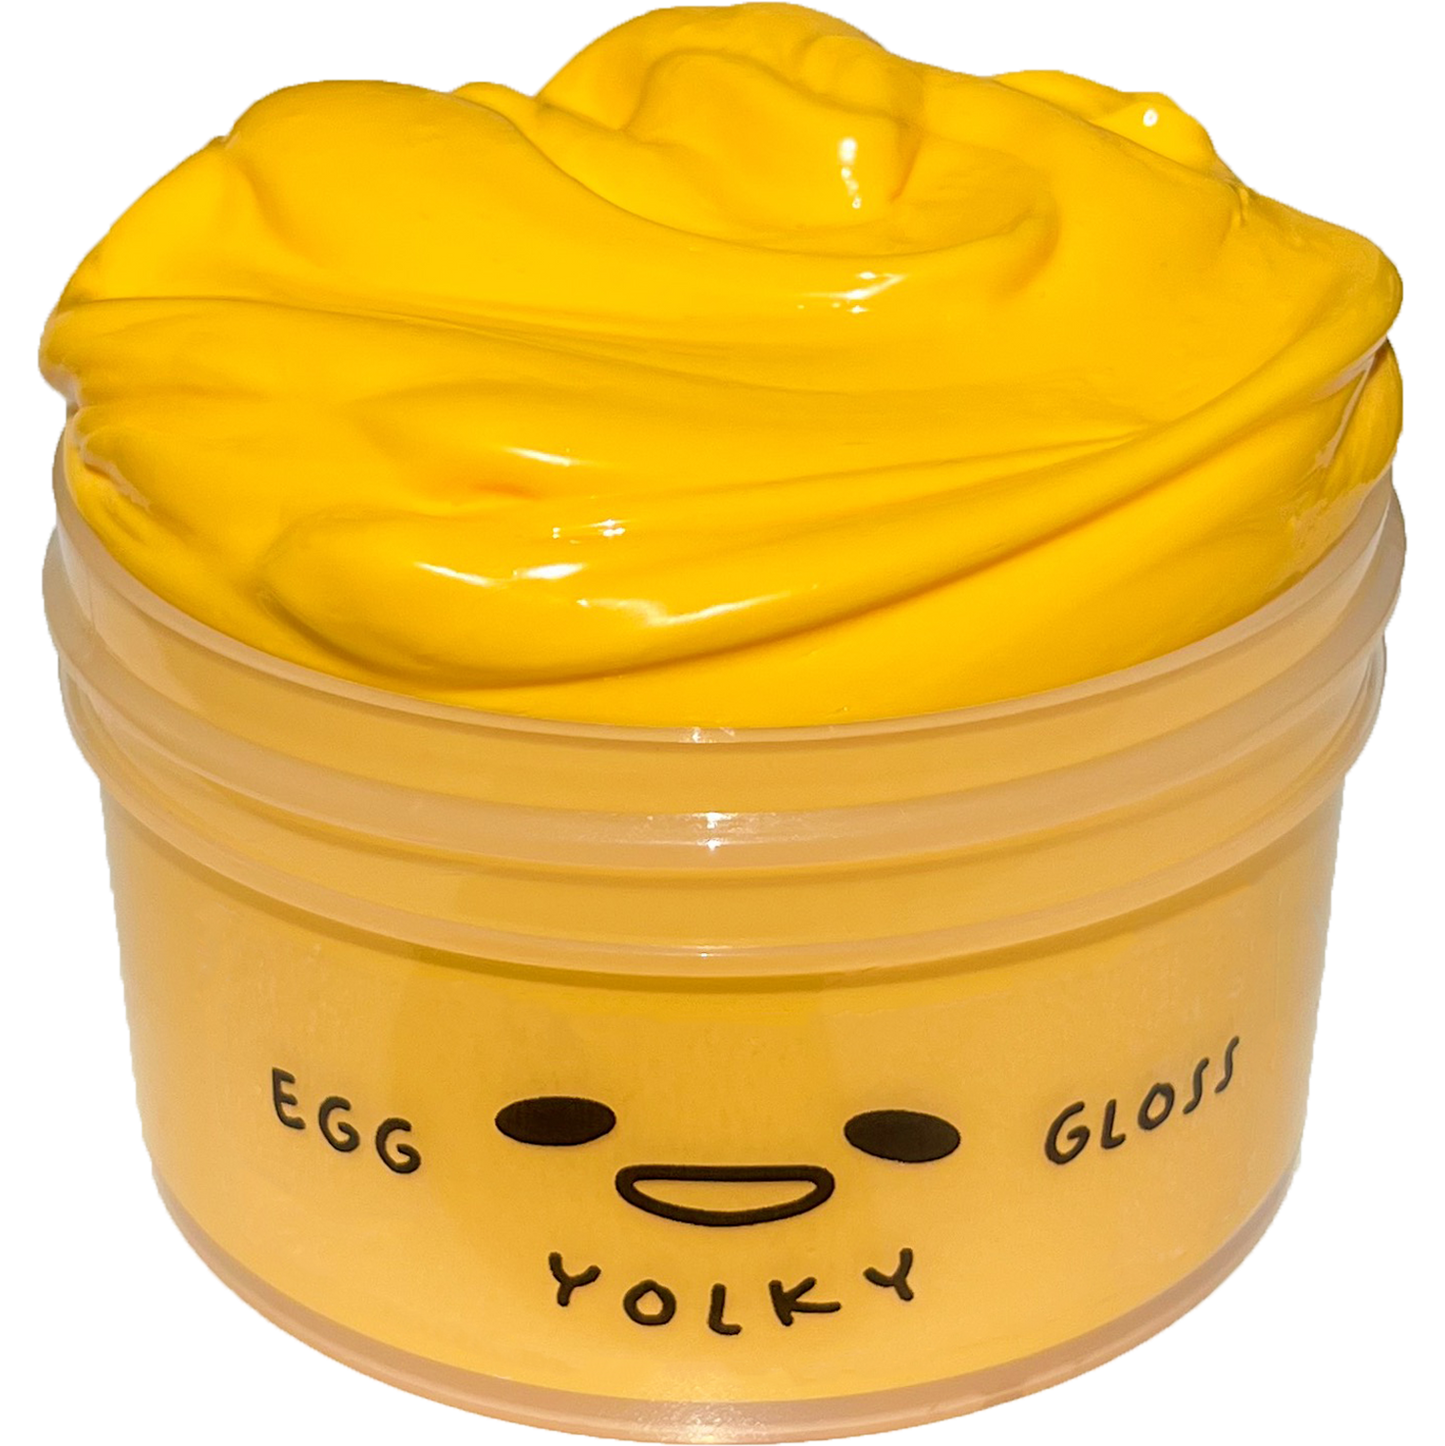 Egg Yolky Gloss